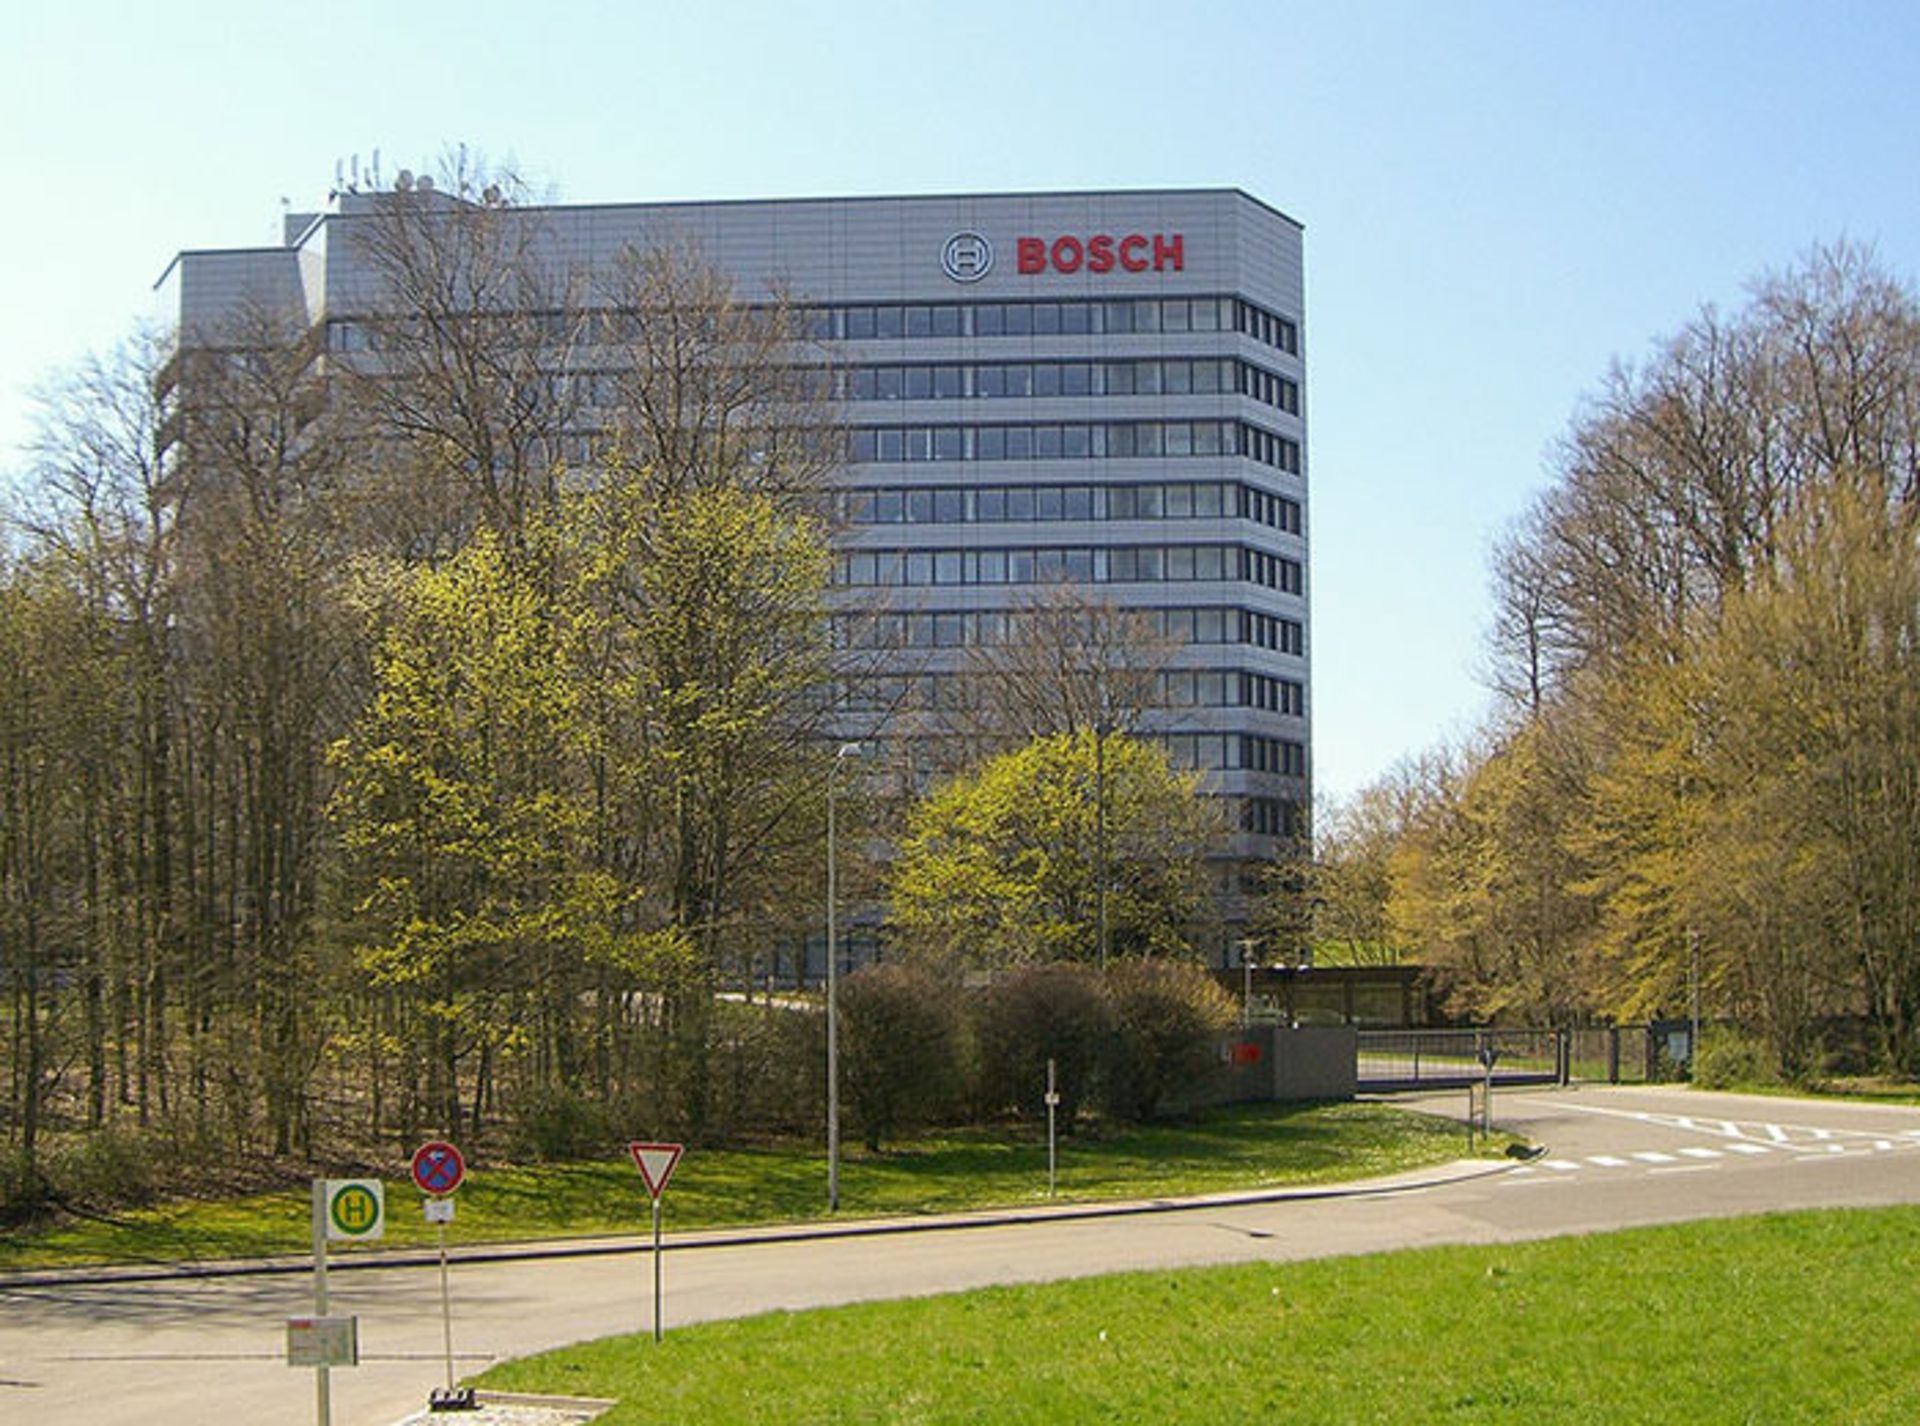 بوش / Bosch